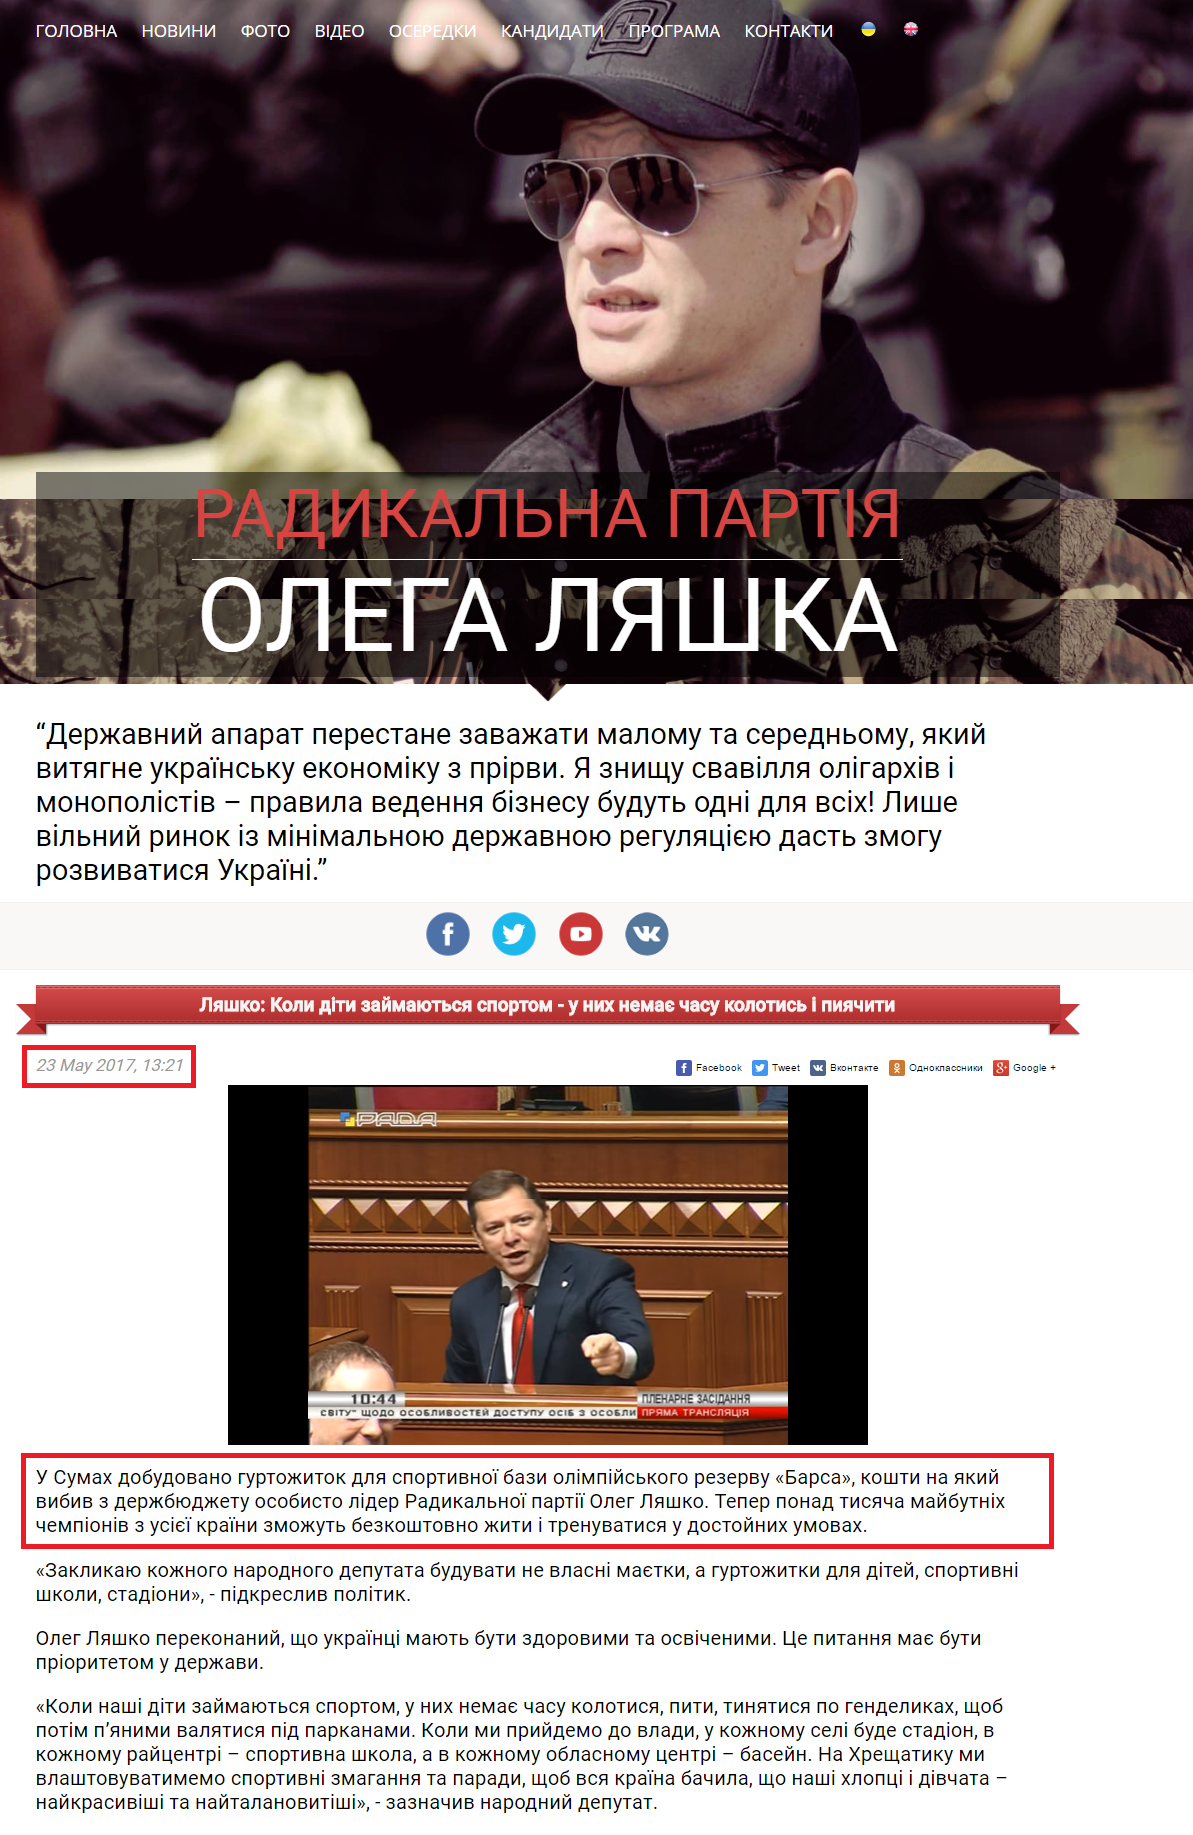 http://www.liashko.ua/news/general/3277-lyashko-koli-diti-zajmayutsya-sportom-u-nih-nemaye-chasu-kolotis-i-piyachiti?attempt=1